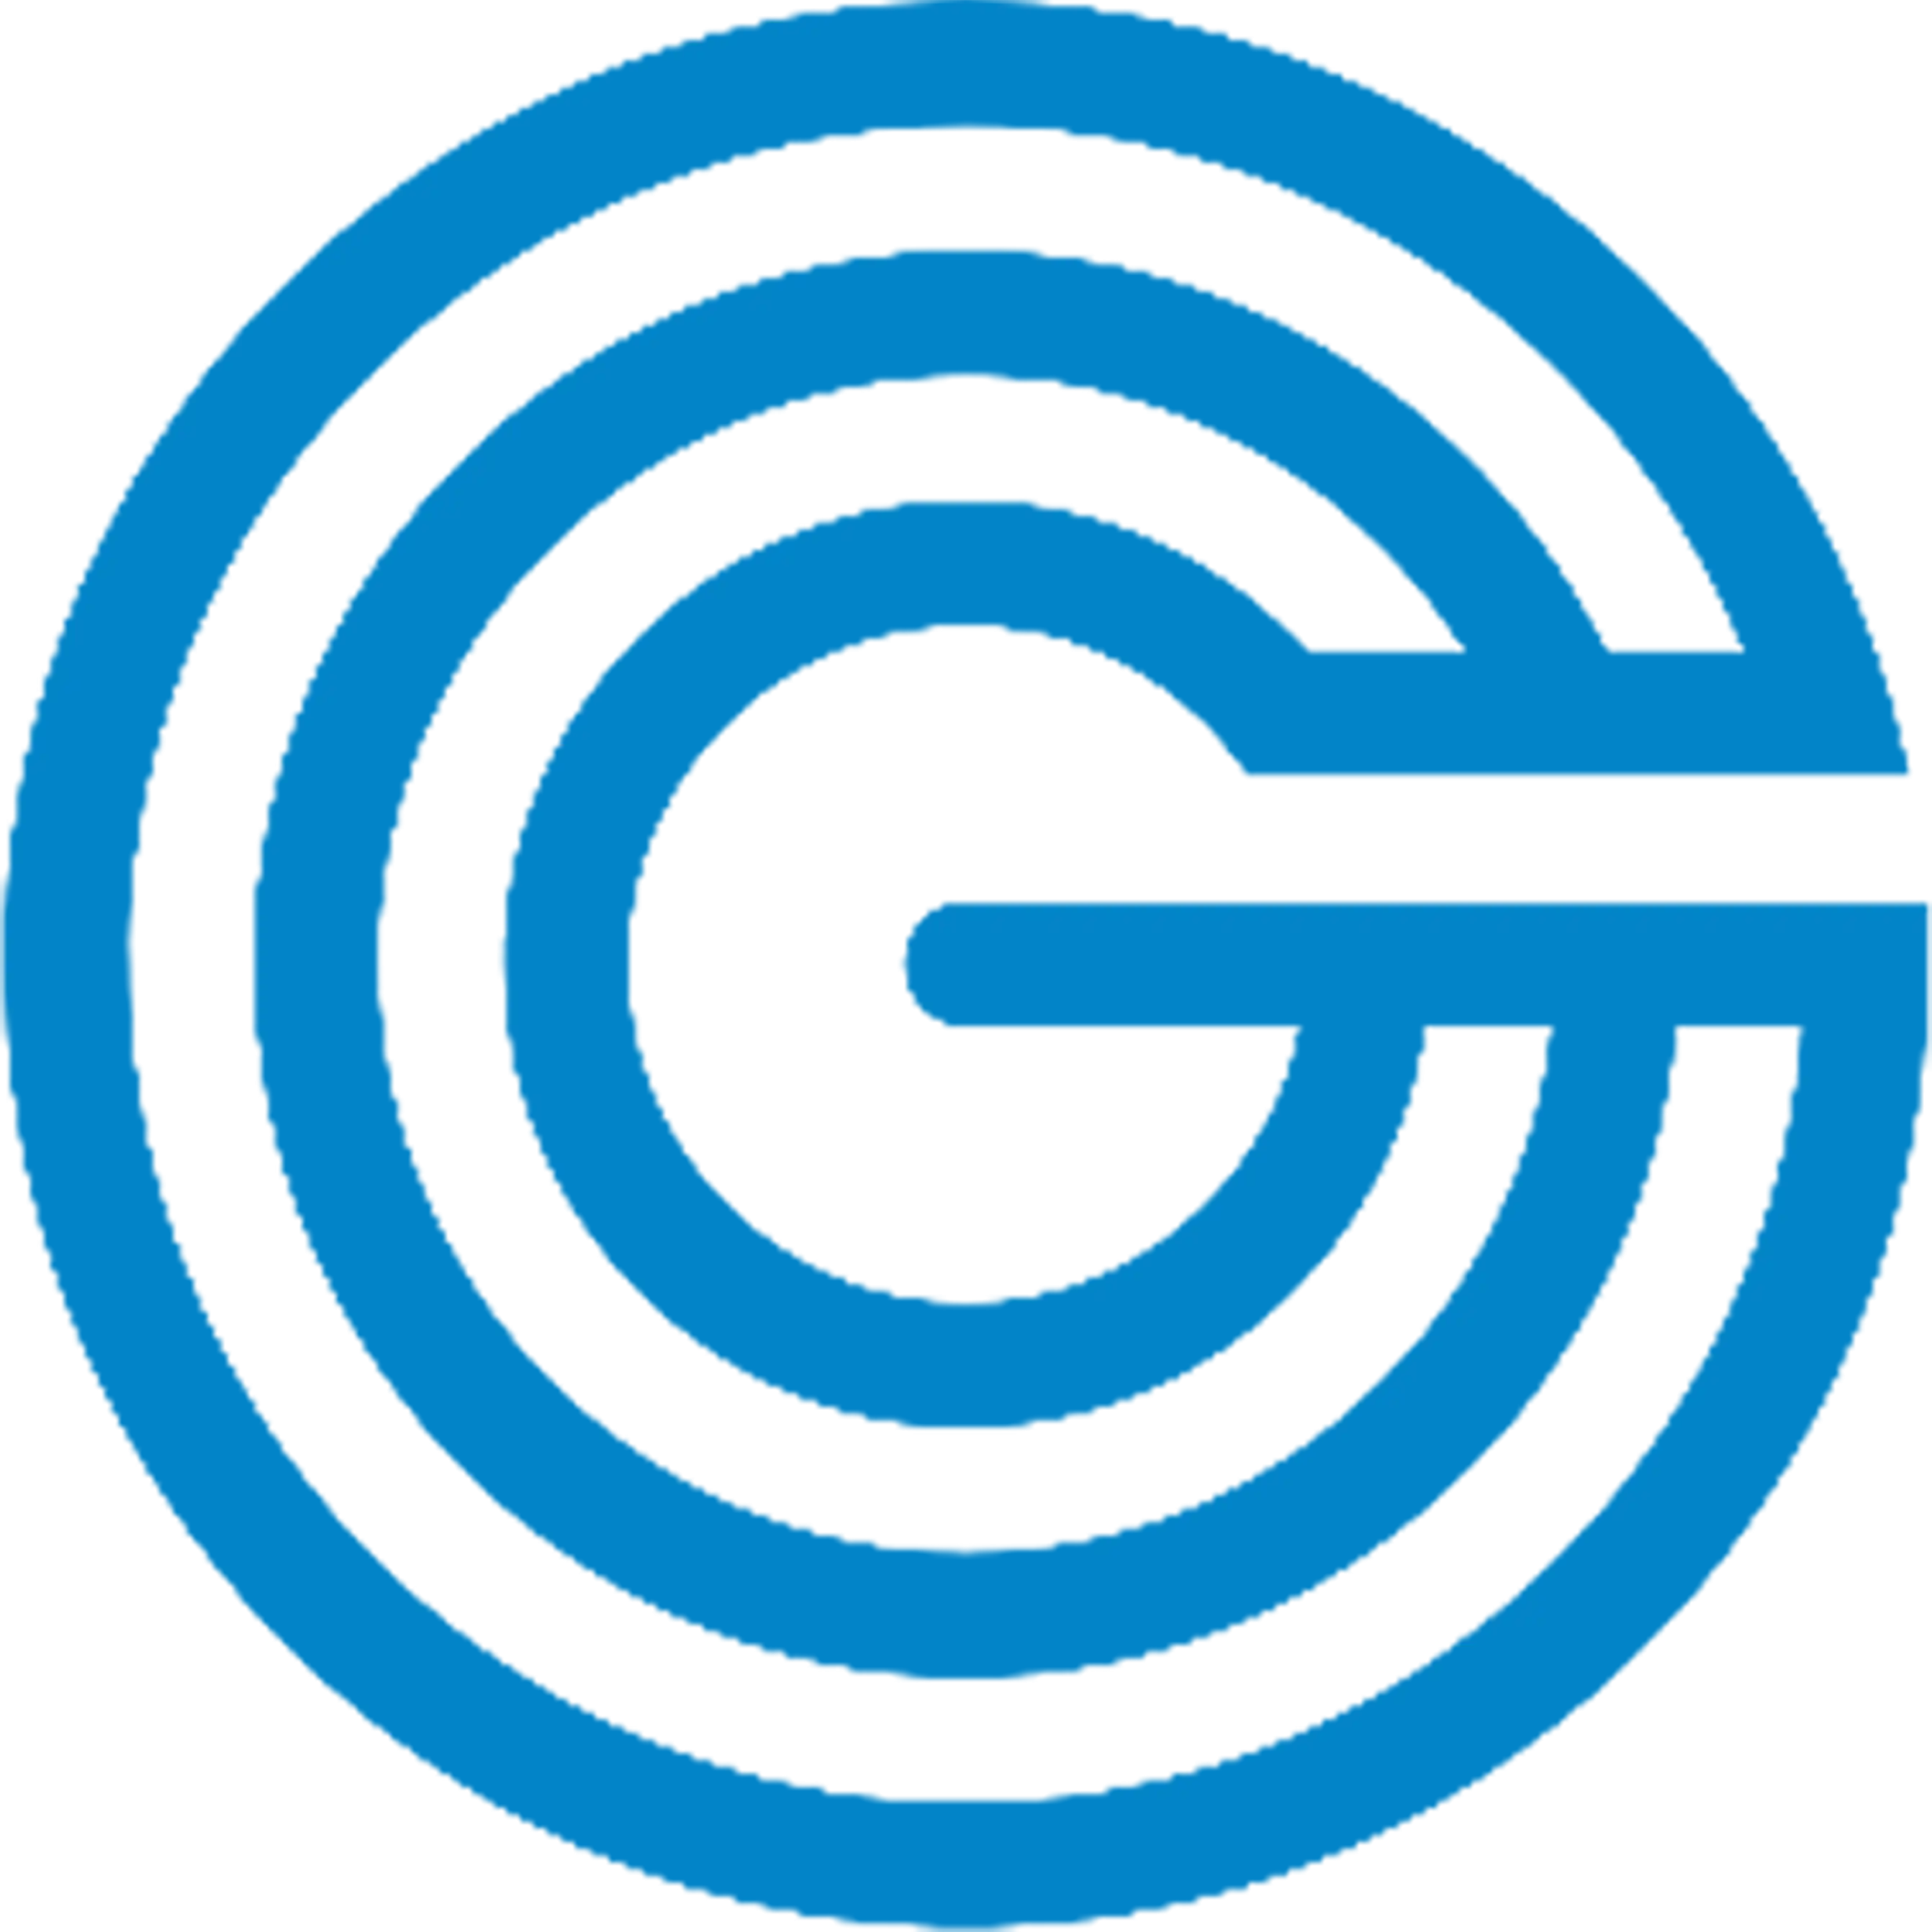 logo goney